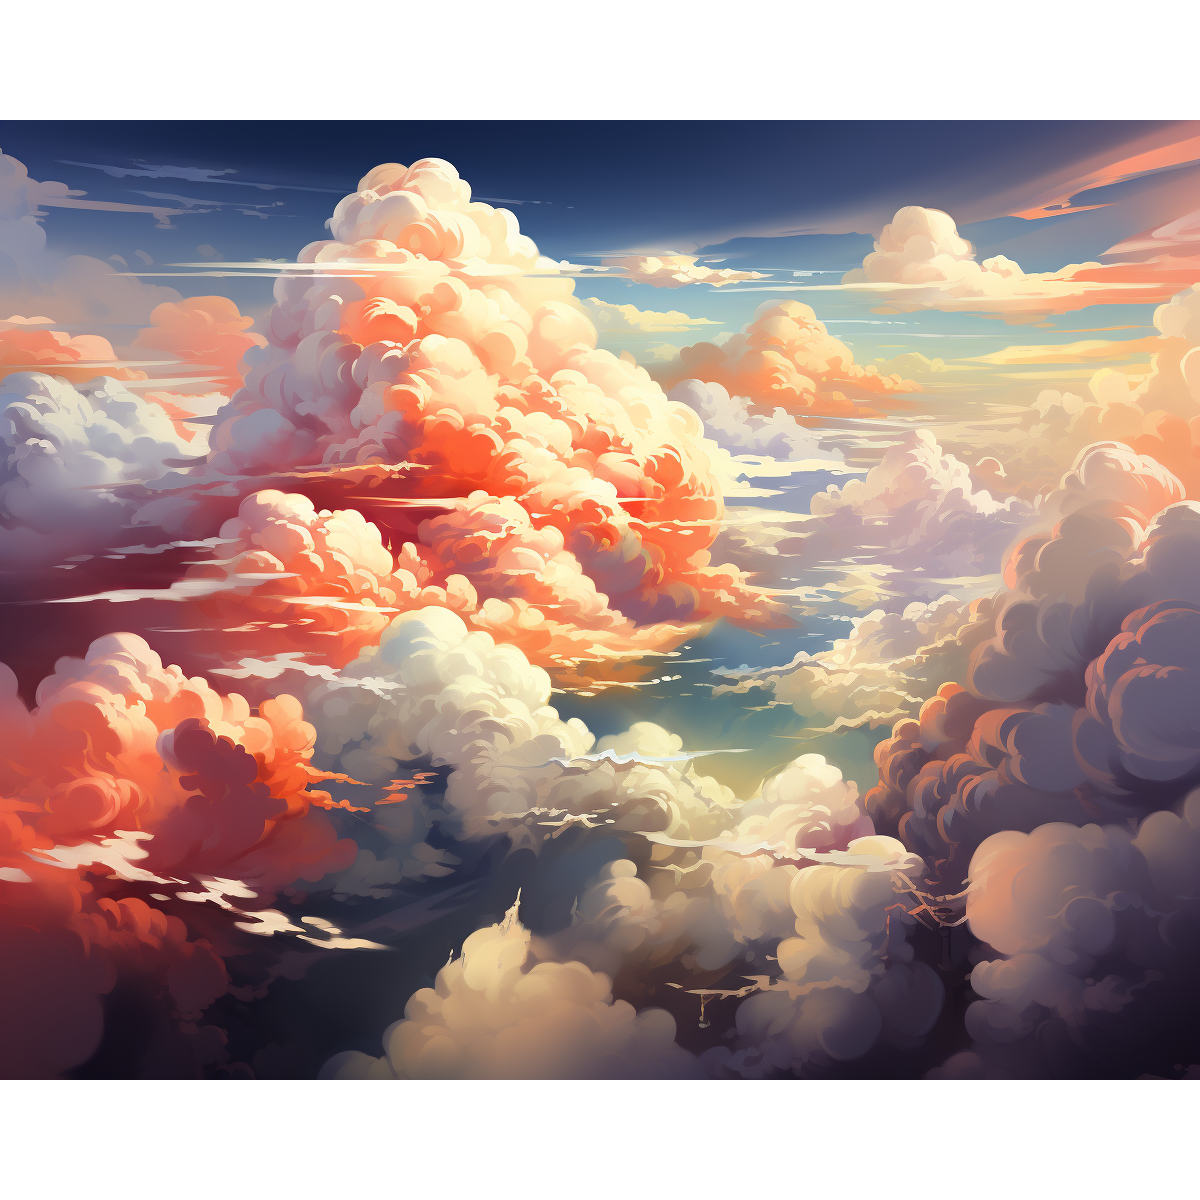 Taevalikud pilved